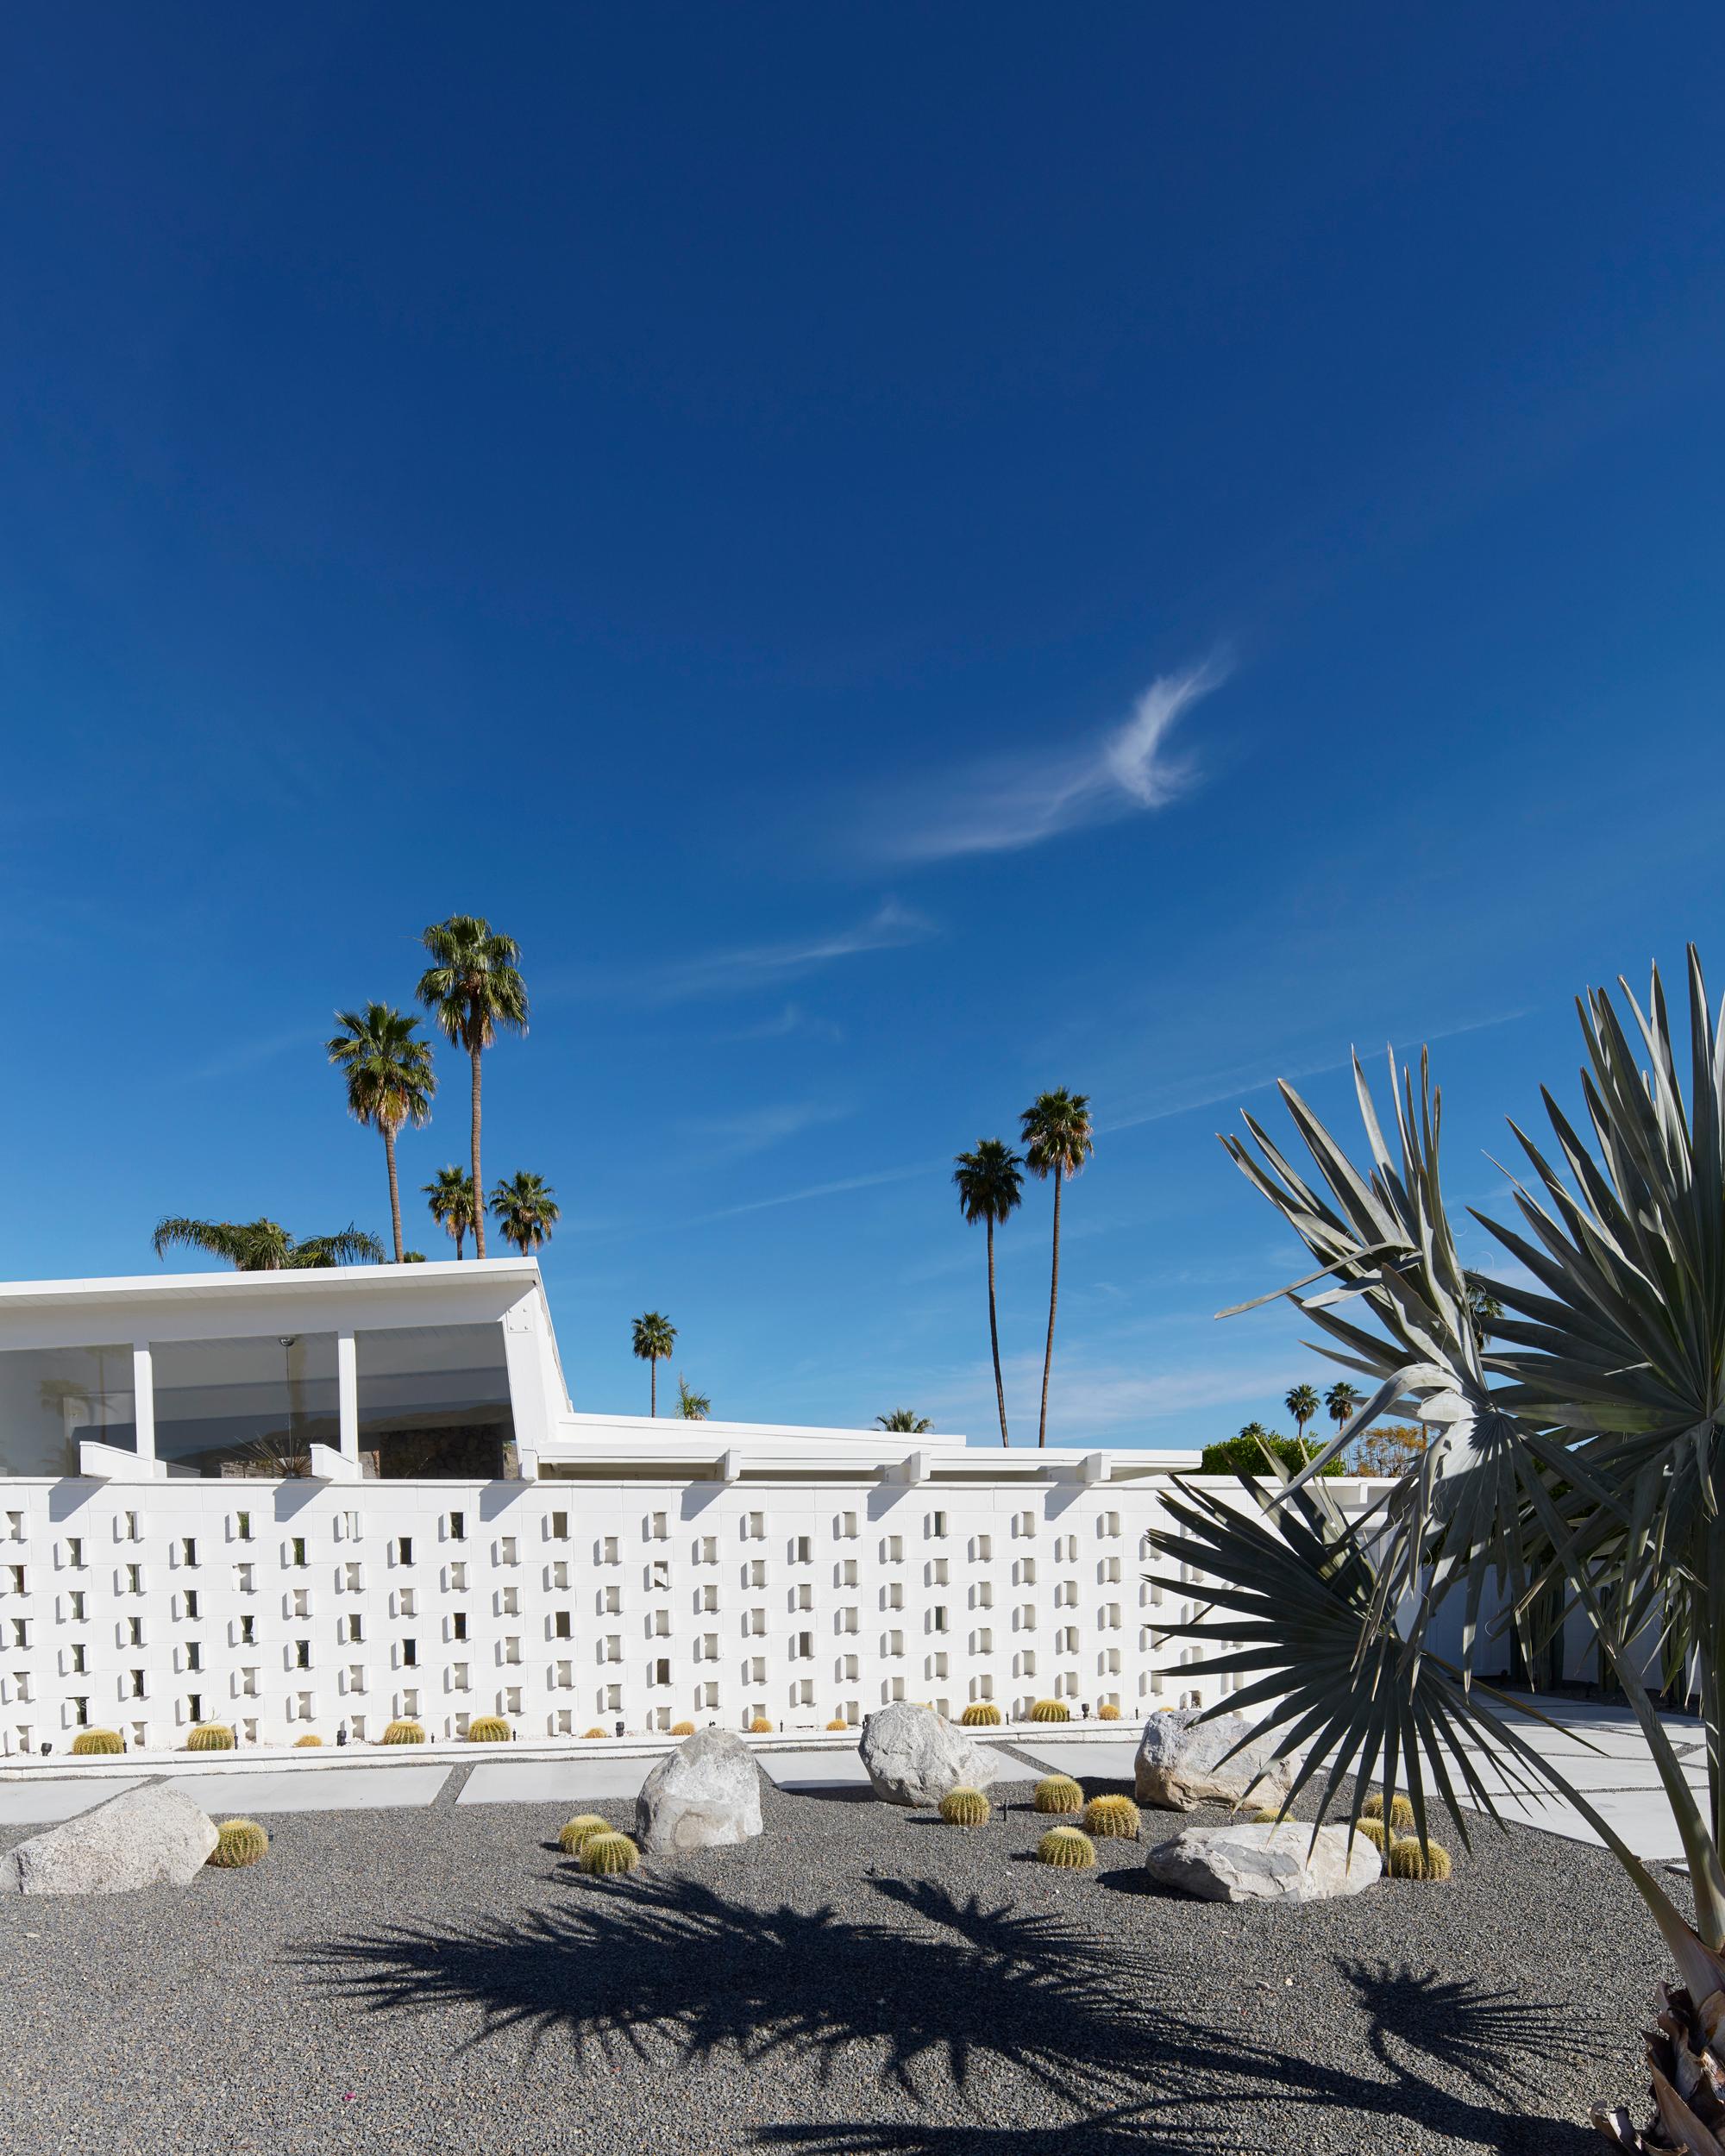 Frank Schott Color Photograph – Palm Springs (Weiß)  - eine Studie der ikonischen Wüstenarchitektur aus der Mitte des Jahrhunderts